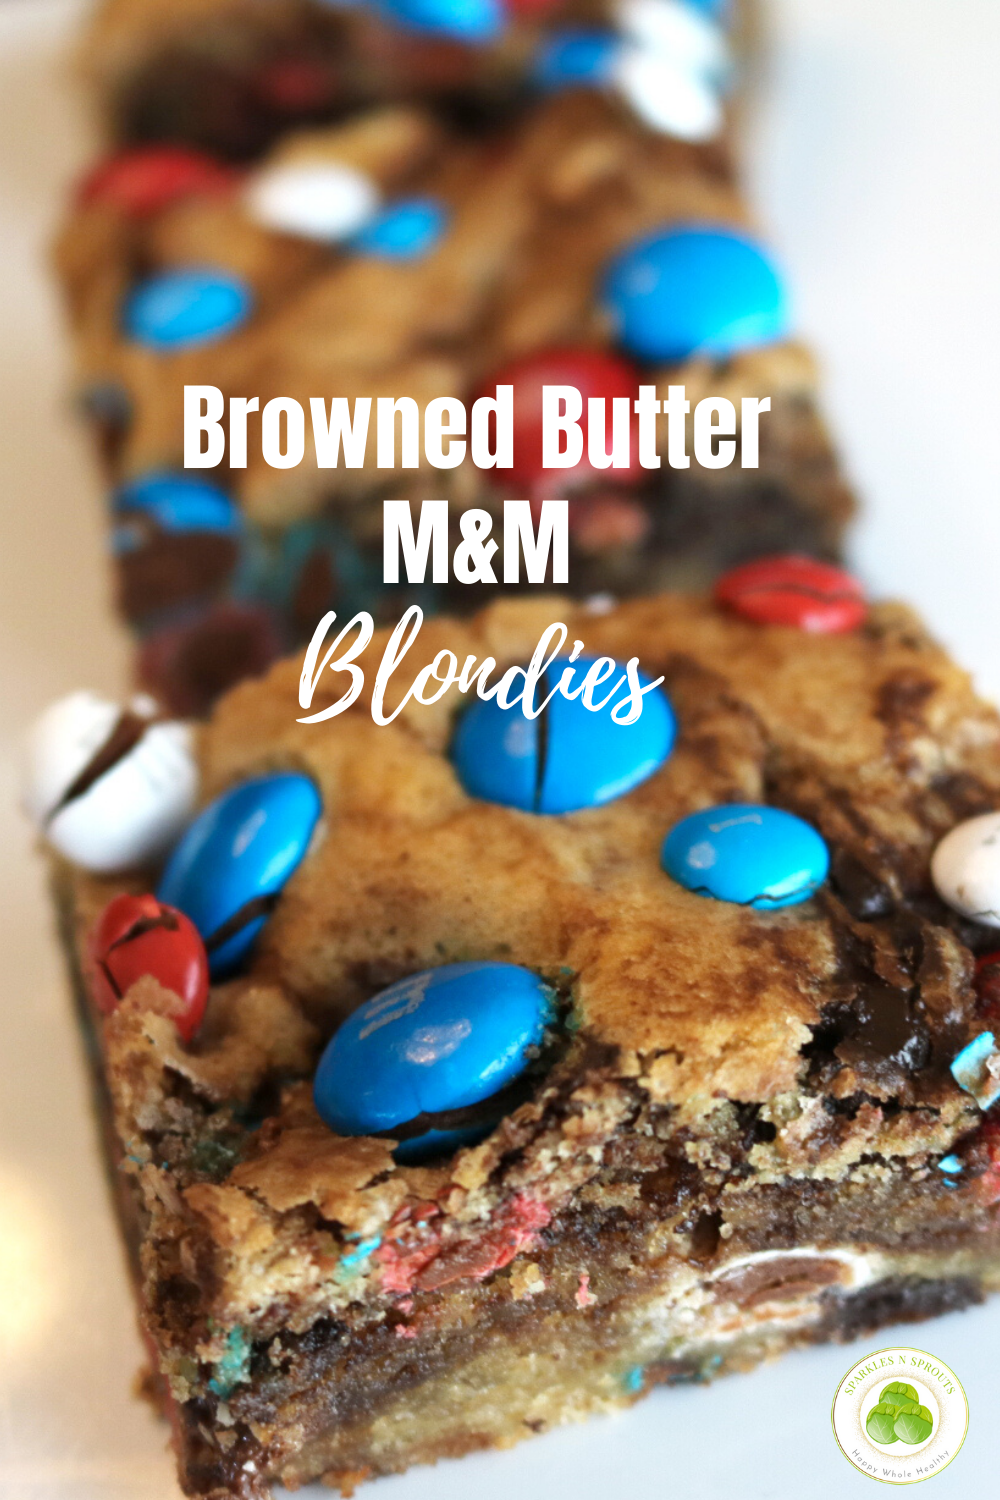 M&M's Brownies - Browned Butter Blondie